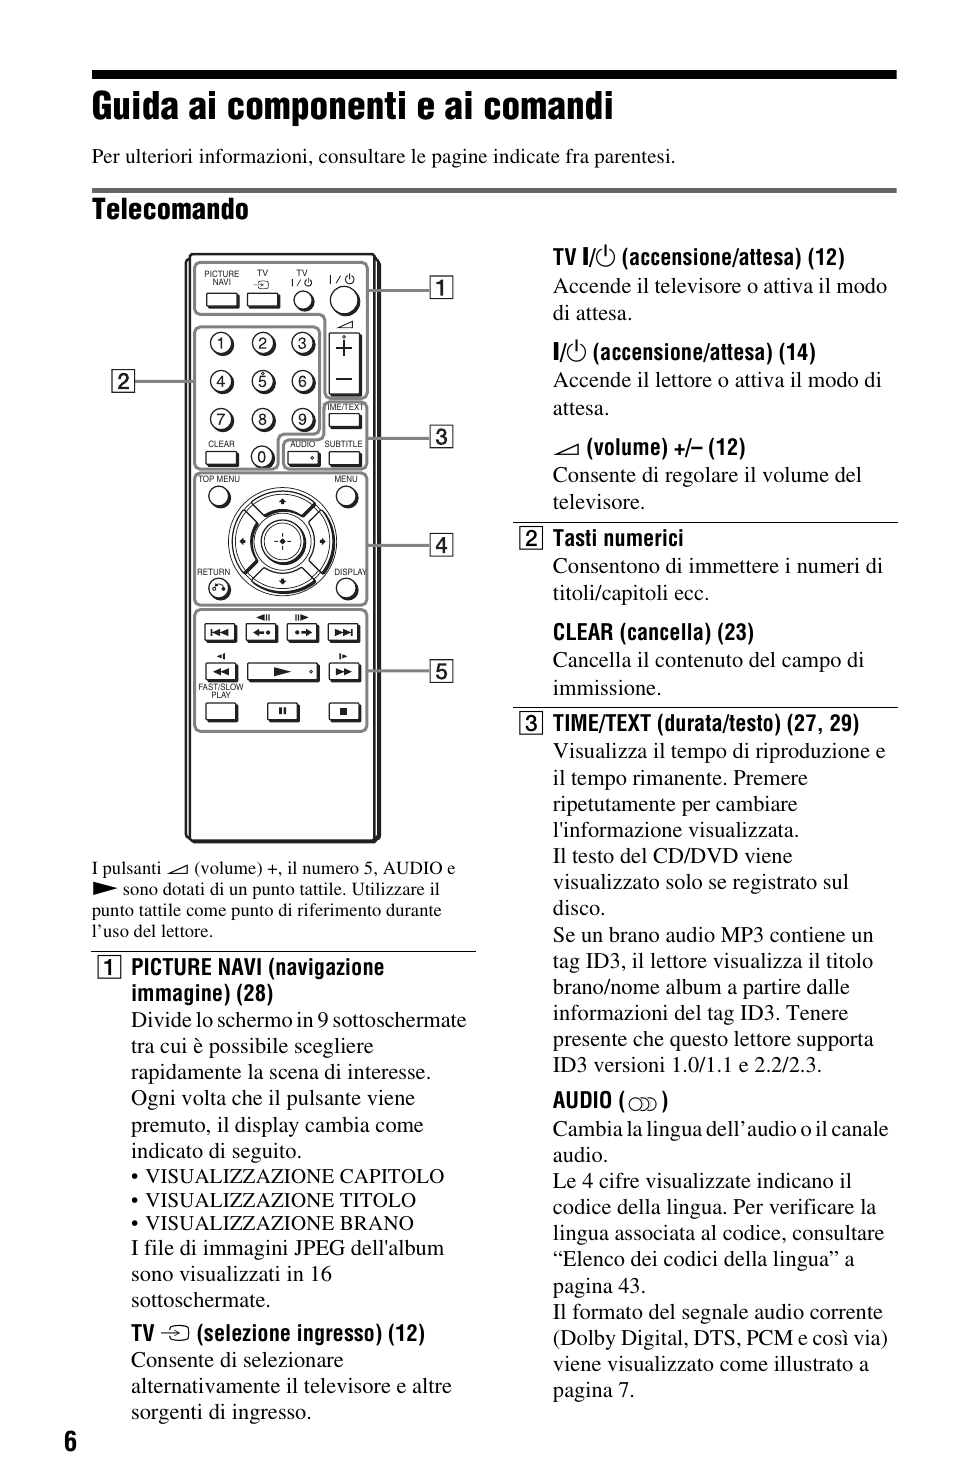 Guida ai componenti e ai comandi, Telecomando | Sony DVP-SR100 Manuale d'uso | Pagina 6 / 48